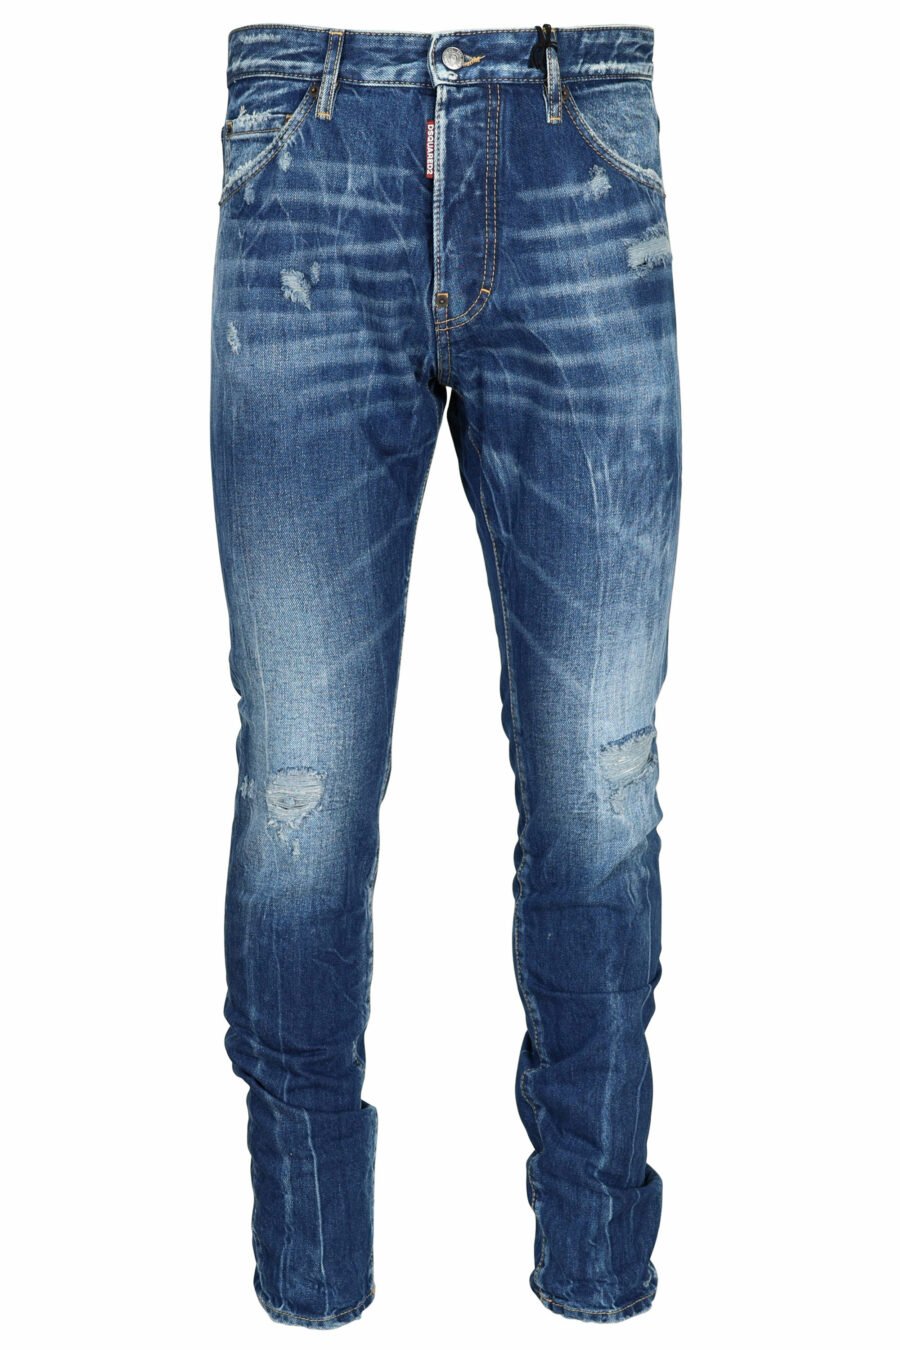 Pantalón vaquero azul "cool guy" con semirotos y desgastado - 8054148459994